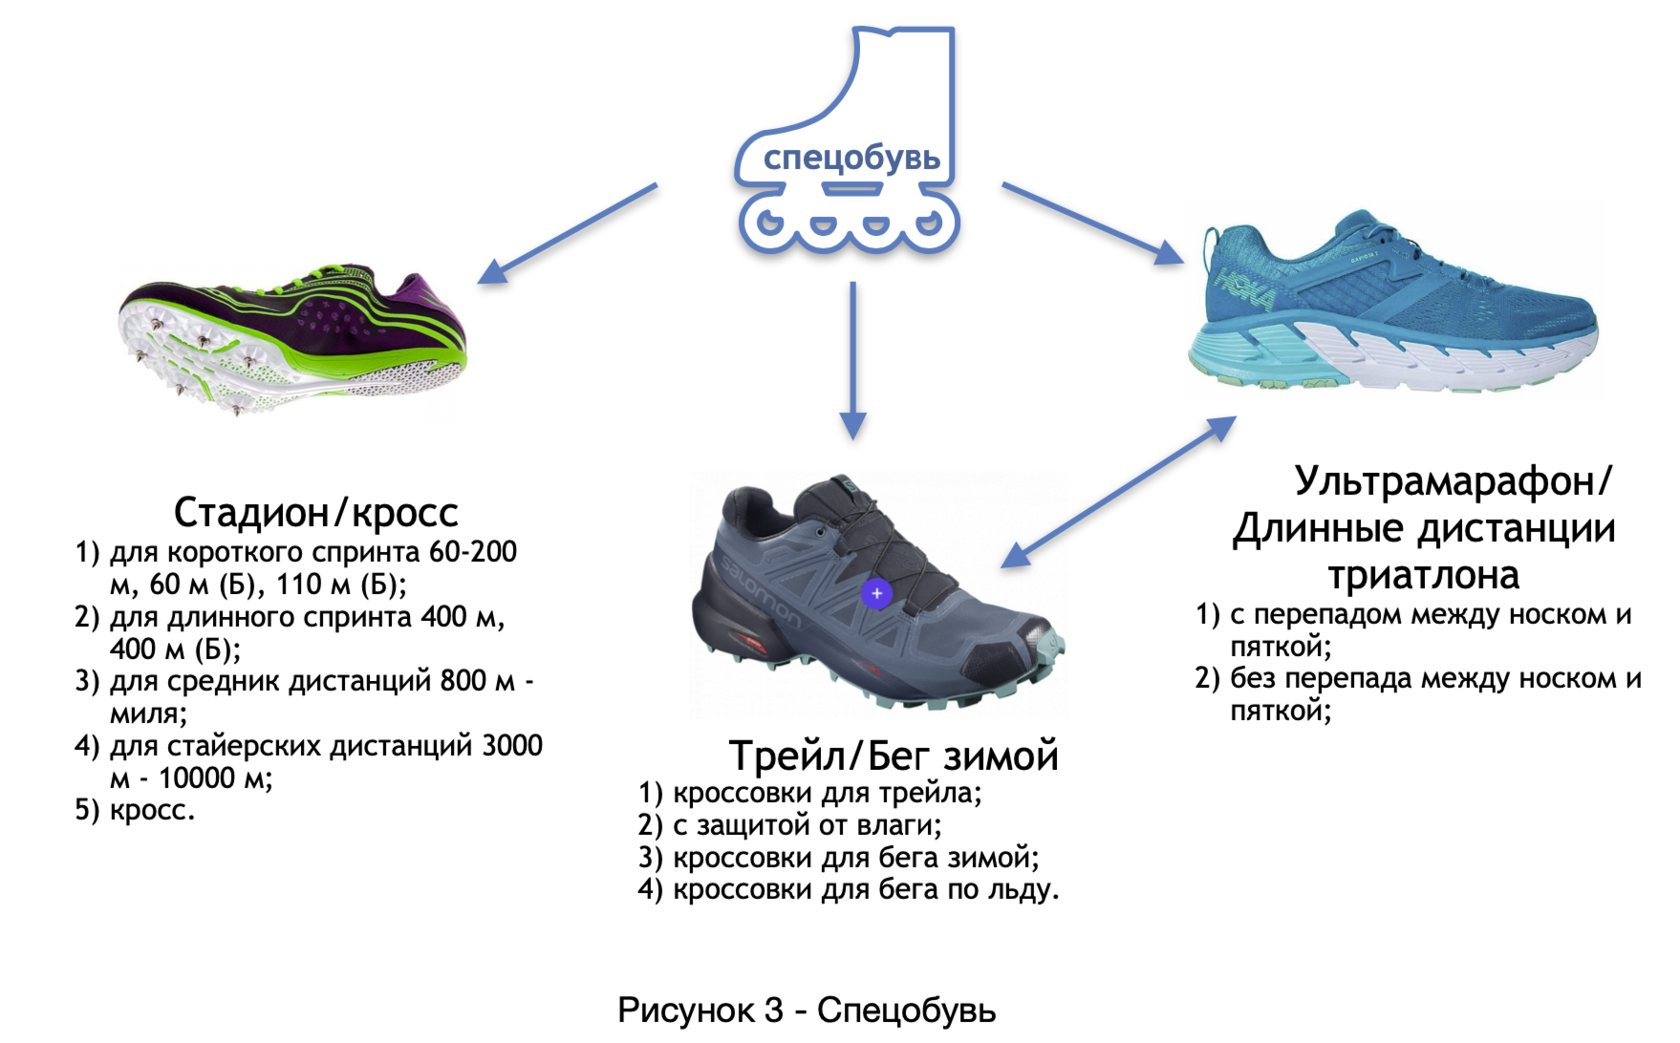 Мужские кроссовки Demix: особенности и обзор моделей, советы по выбору Какую спортивную обувь выпускает марка для бега и силовых тренировок Какие модели подойдут для повседневной носки